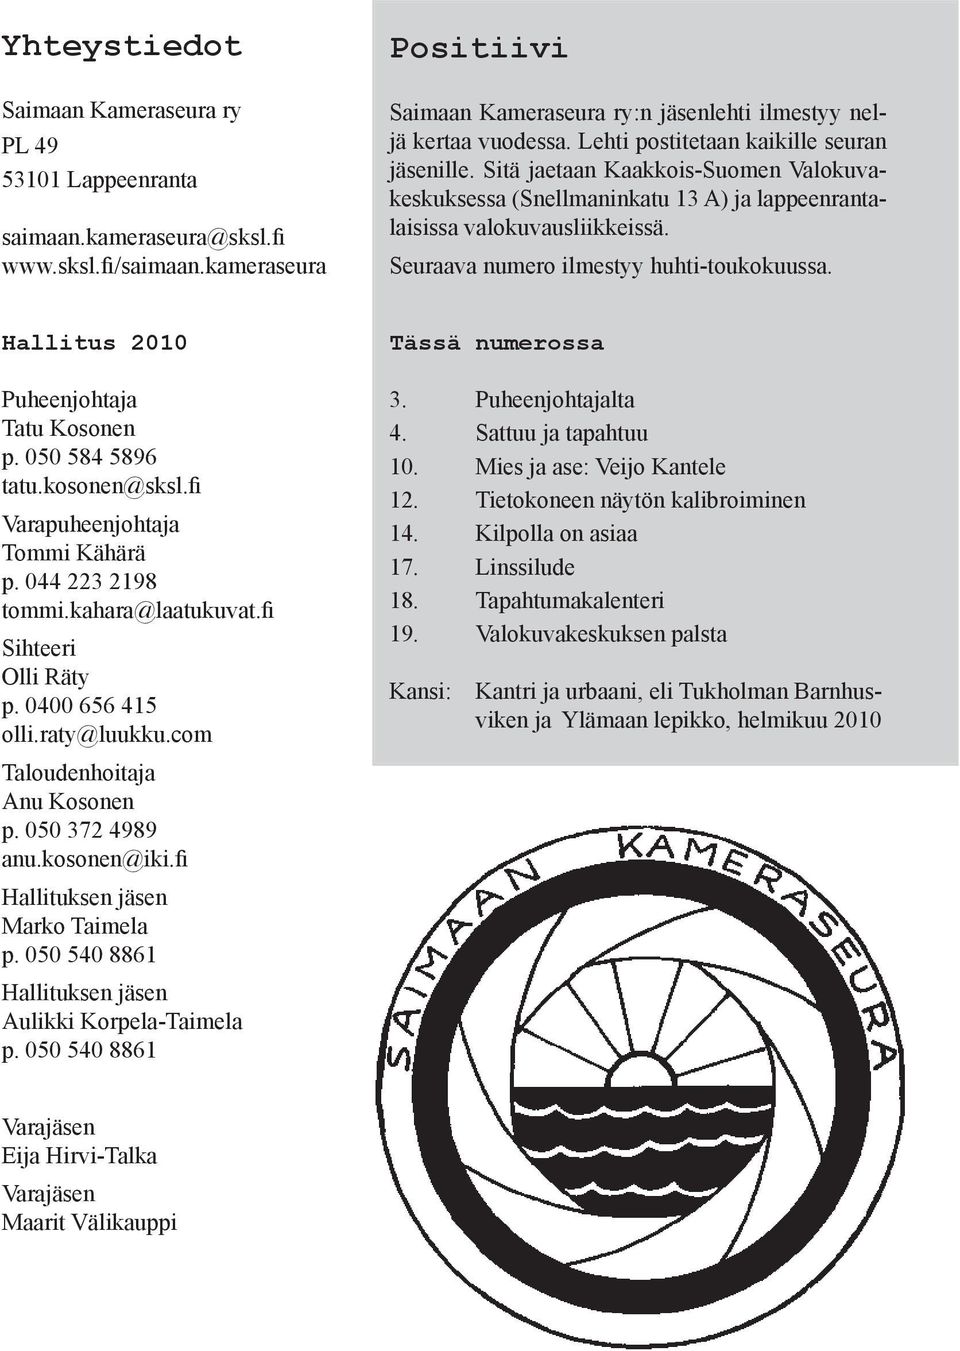 Seuraava numero ilmestyy huhti-toukokuussa. Hallitus 2010 Puheenjohtaja Tatu Kosonen p. 050 584 5896 tatu.kosonen@sksl.fi Varapuheenjohtaja Tommi Kähärä p. 044 223 2198 tommi.kahara@laatukuvat.